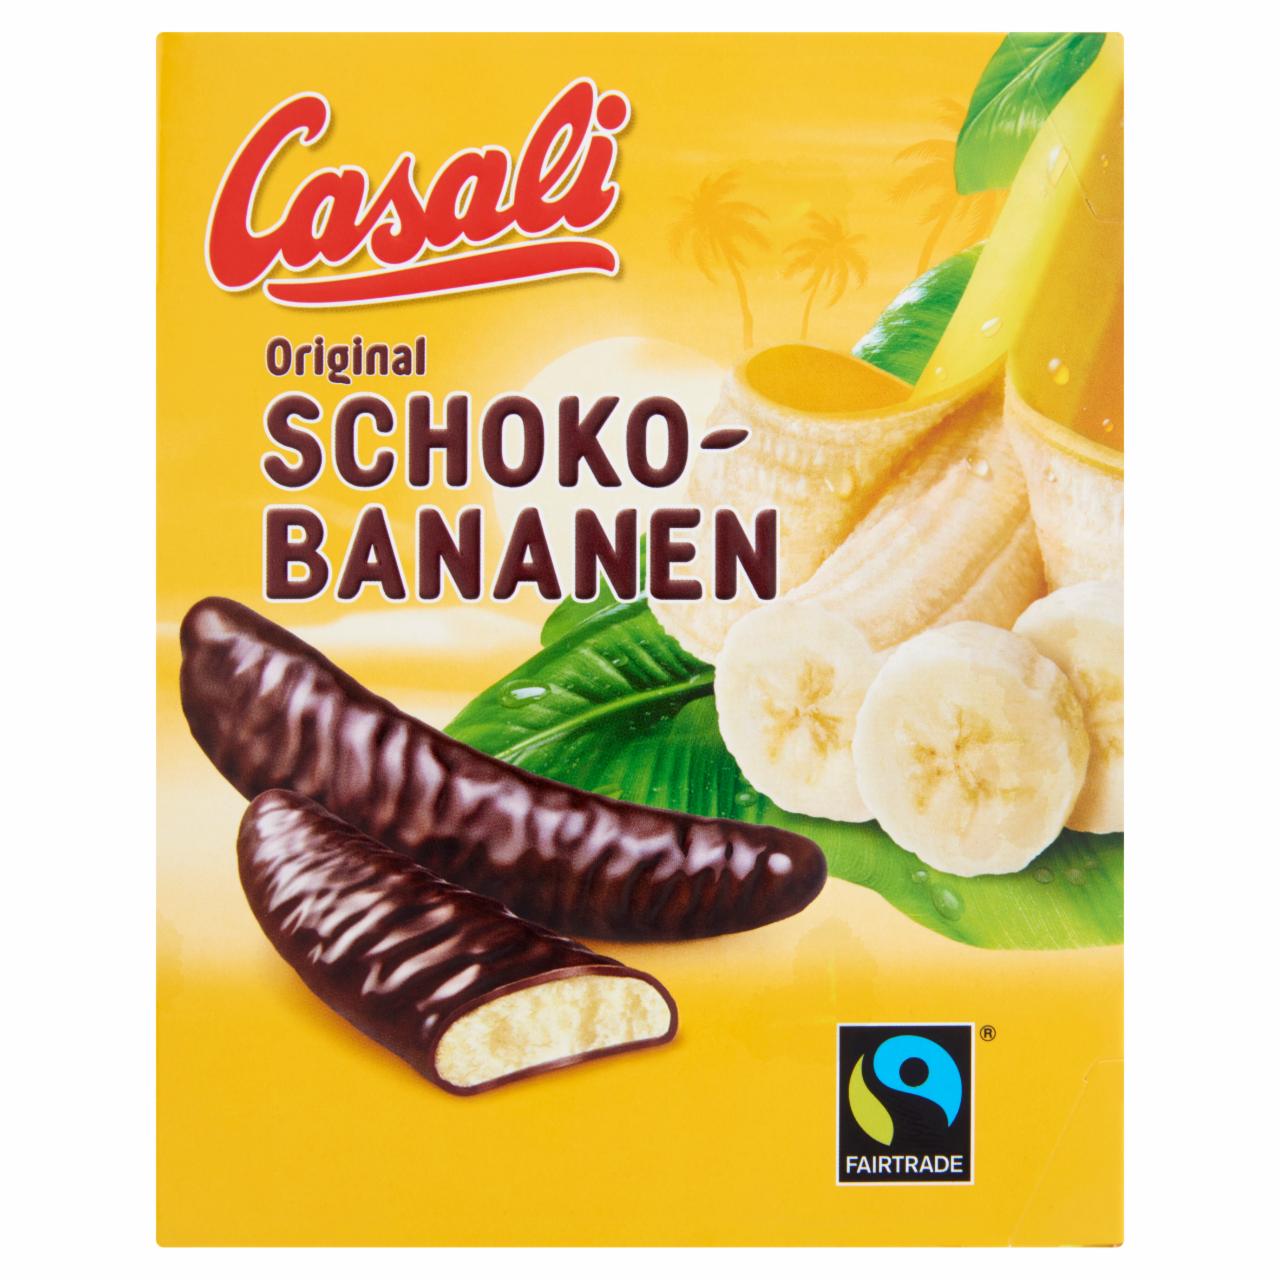 Képek - Casali Original habosított banánkrém csokoládéba mártva 150 g